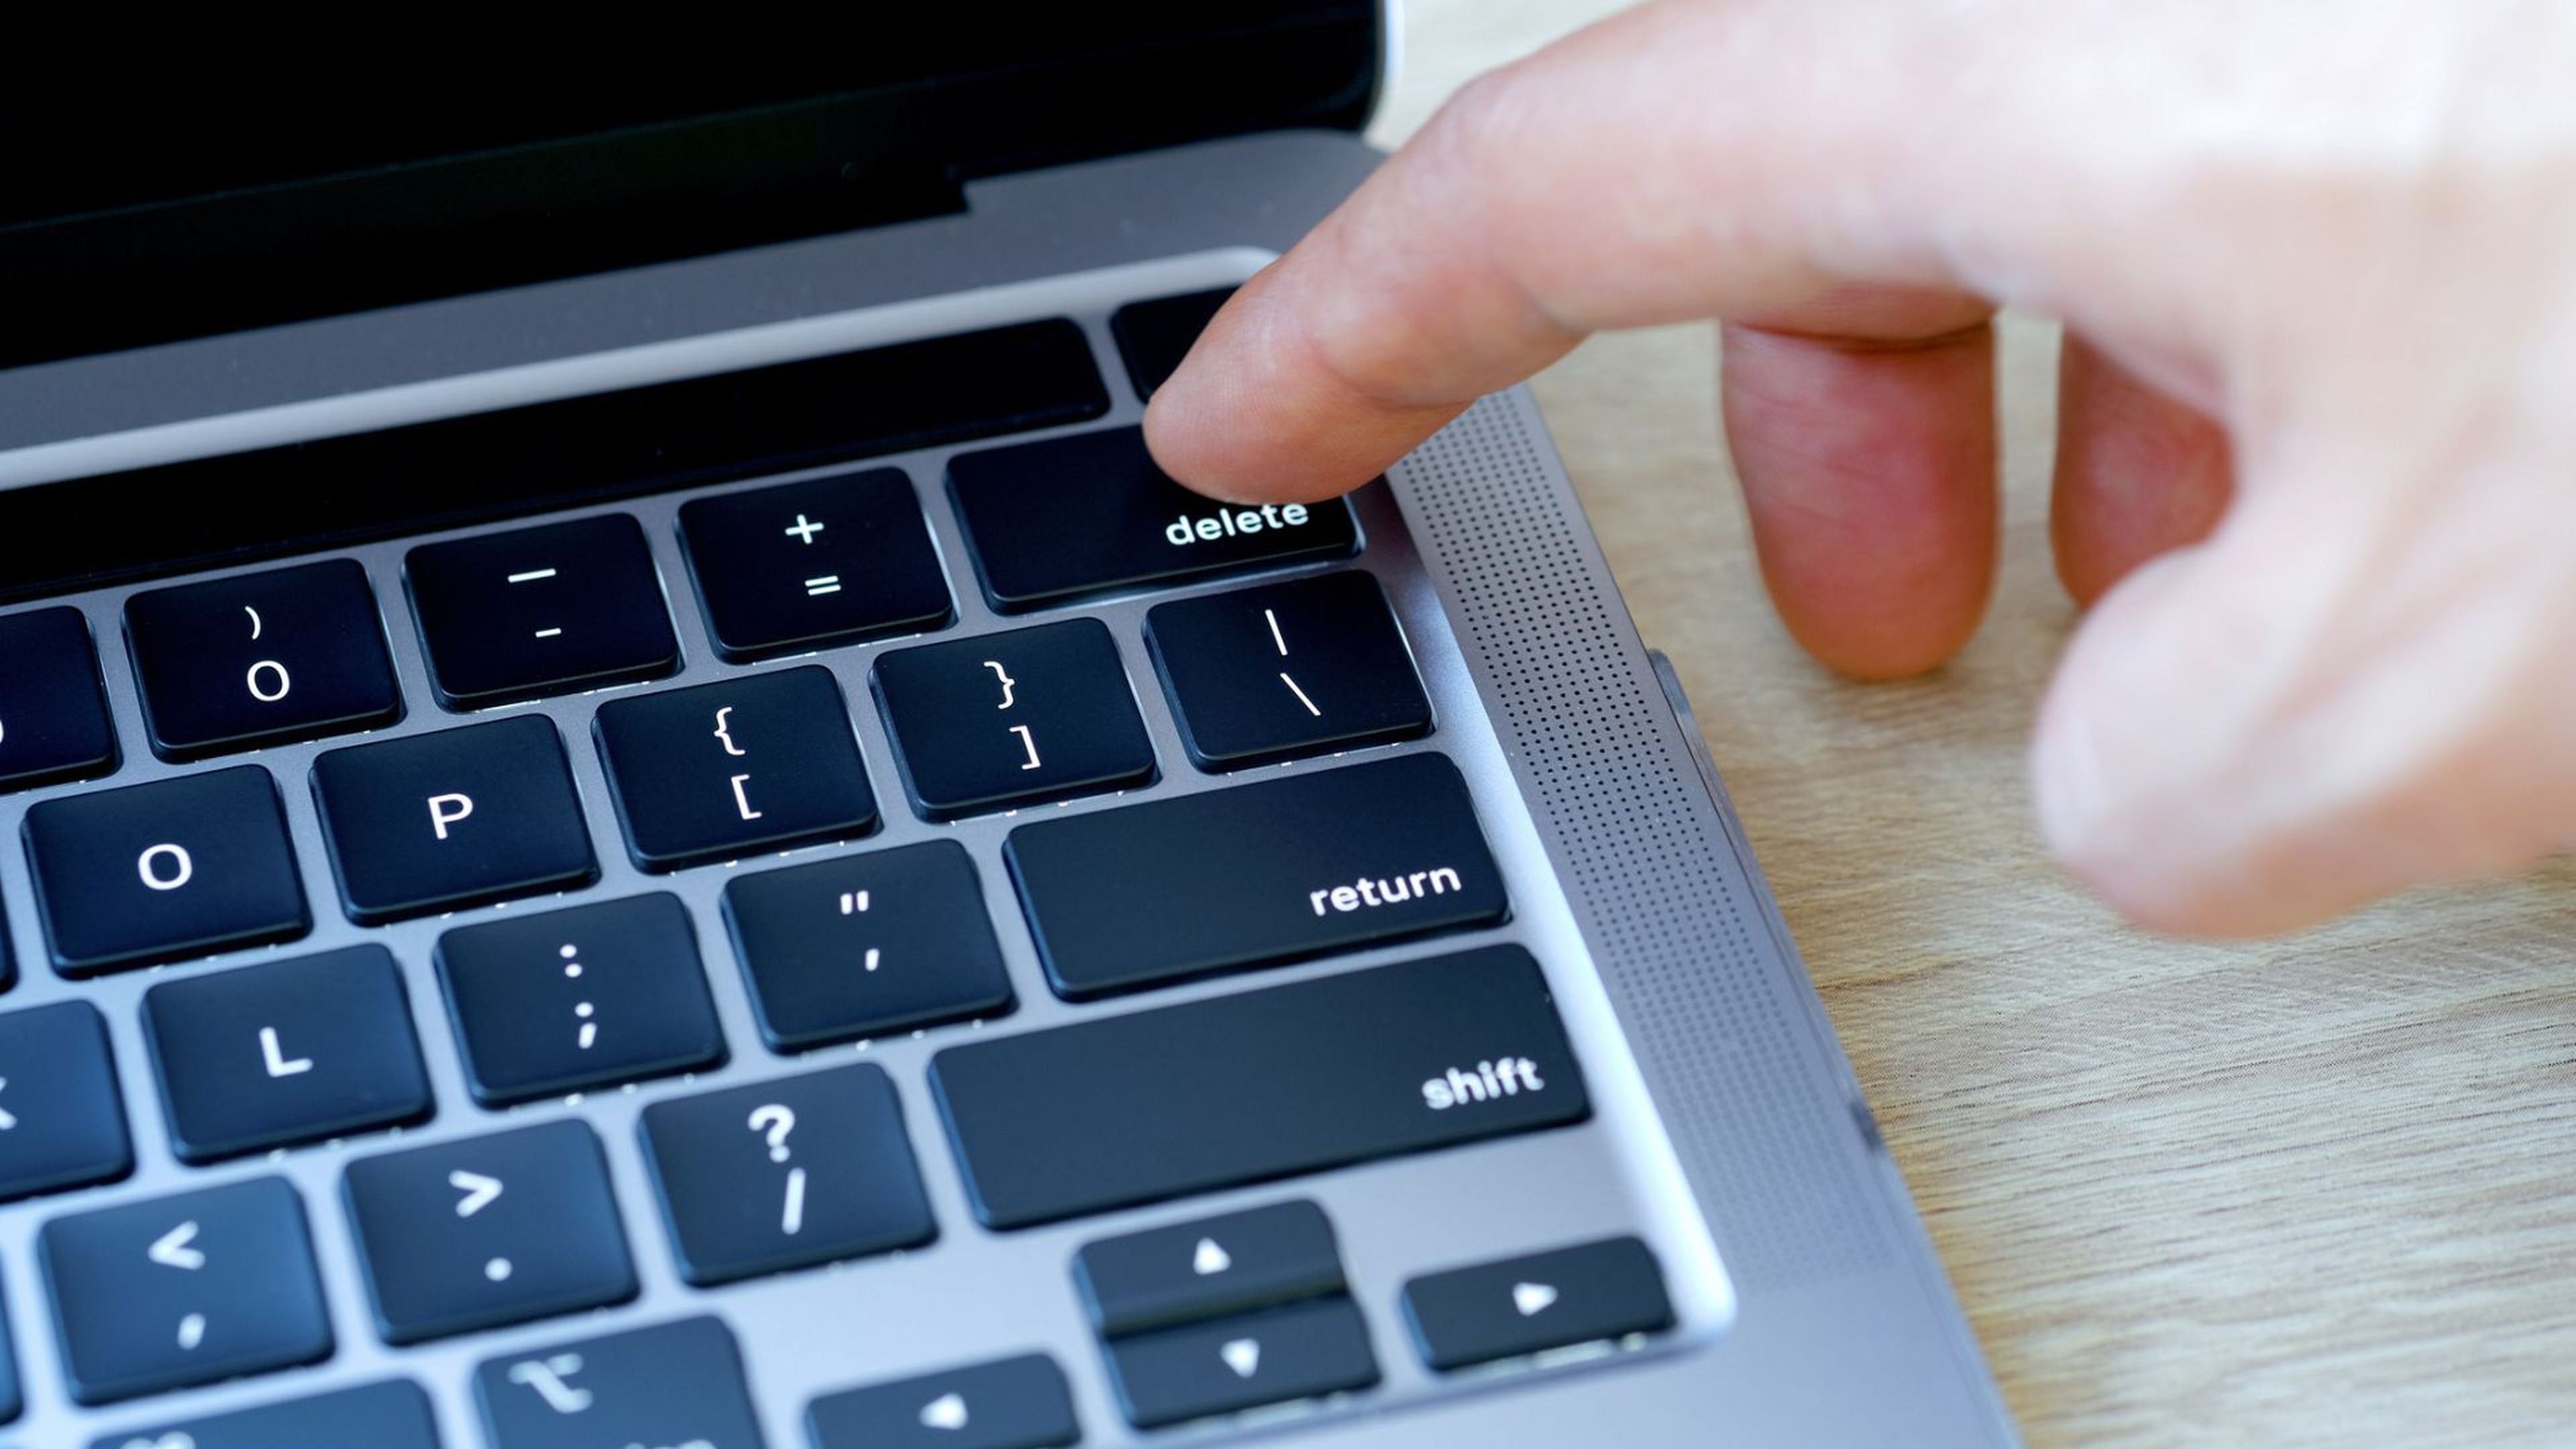 Una persona pulsa la tecla de 'borrar' en un teclado de ordenador.